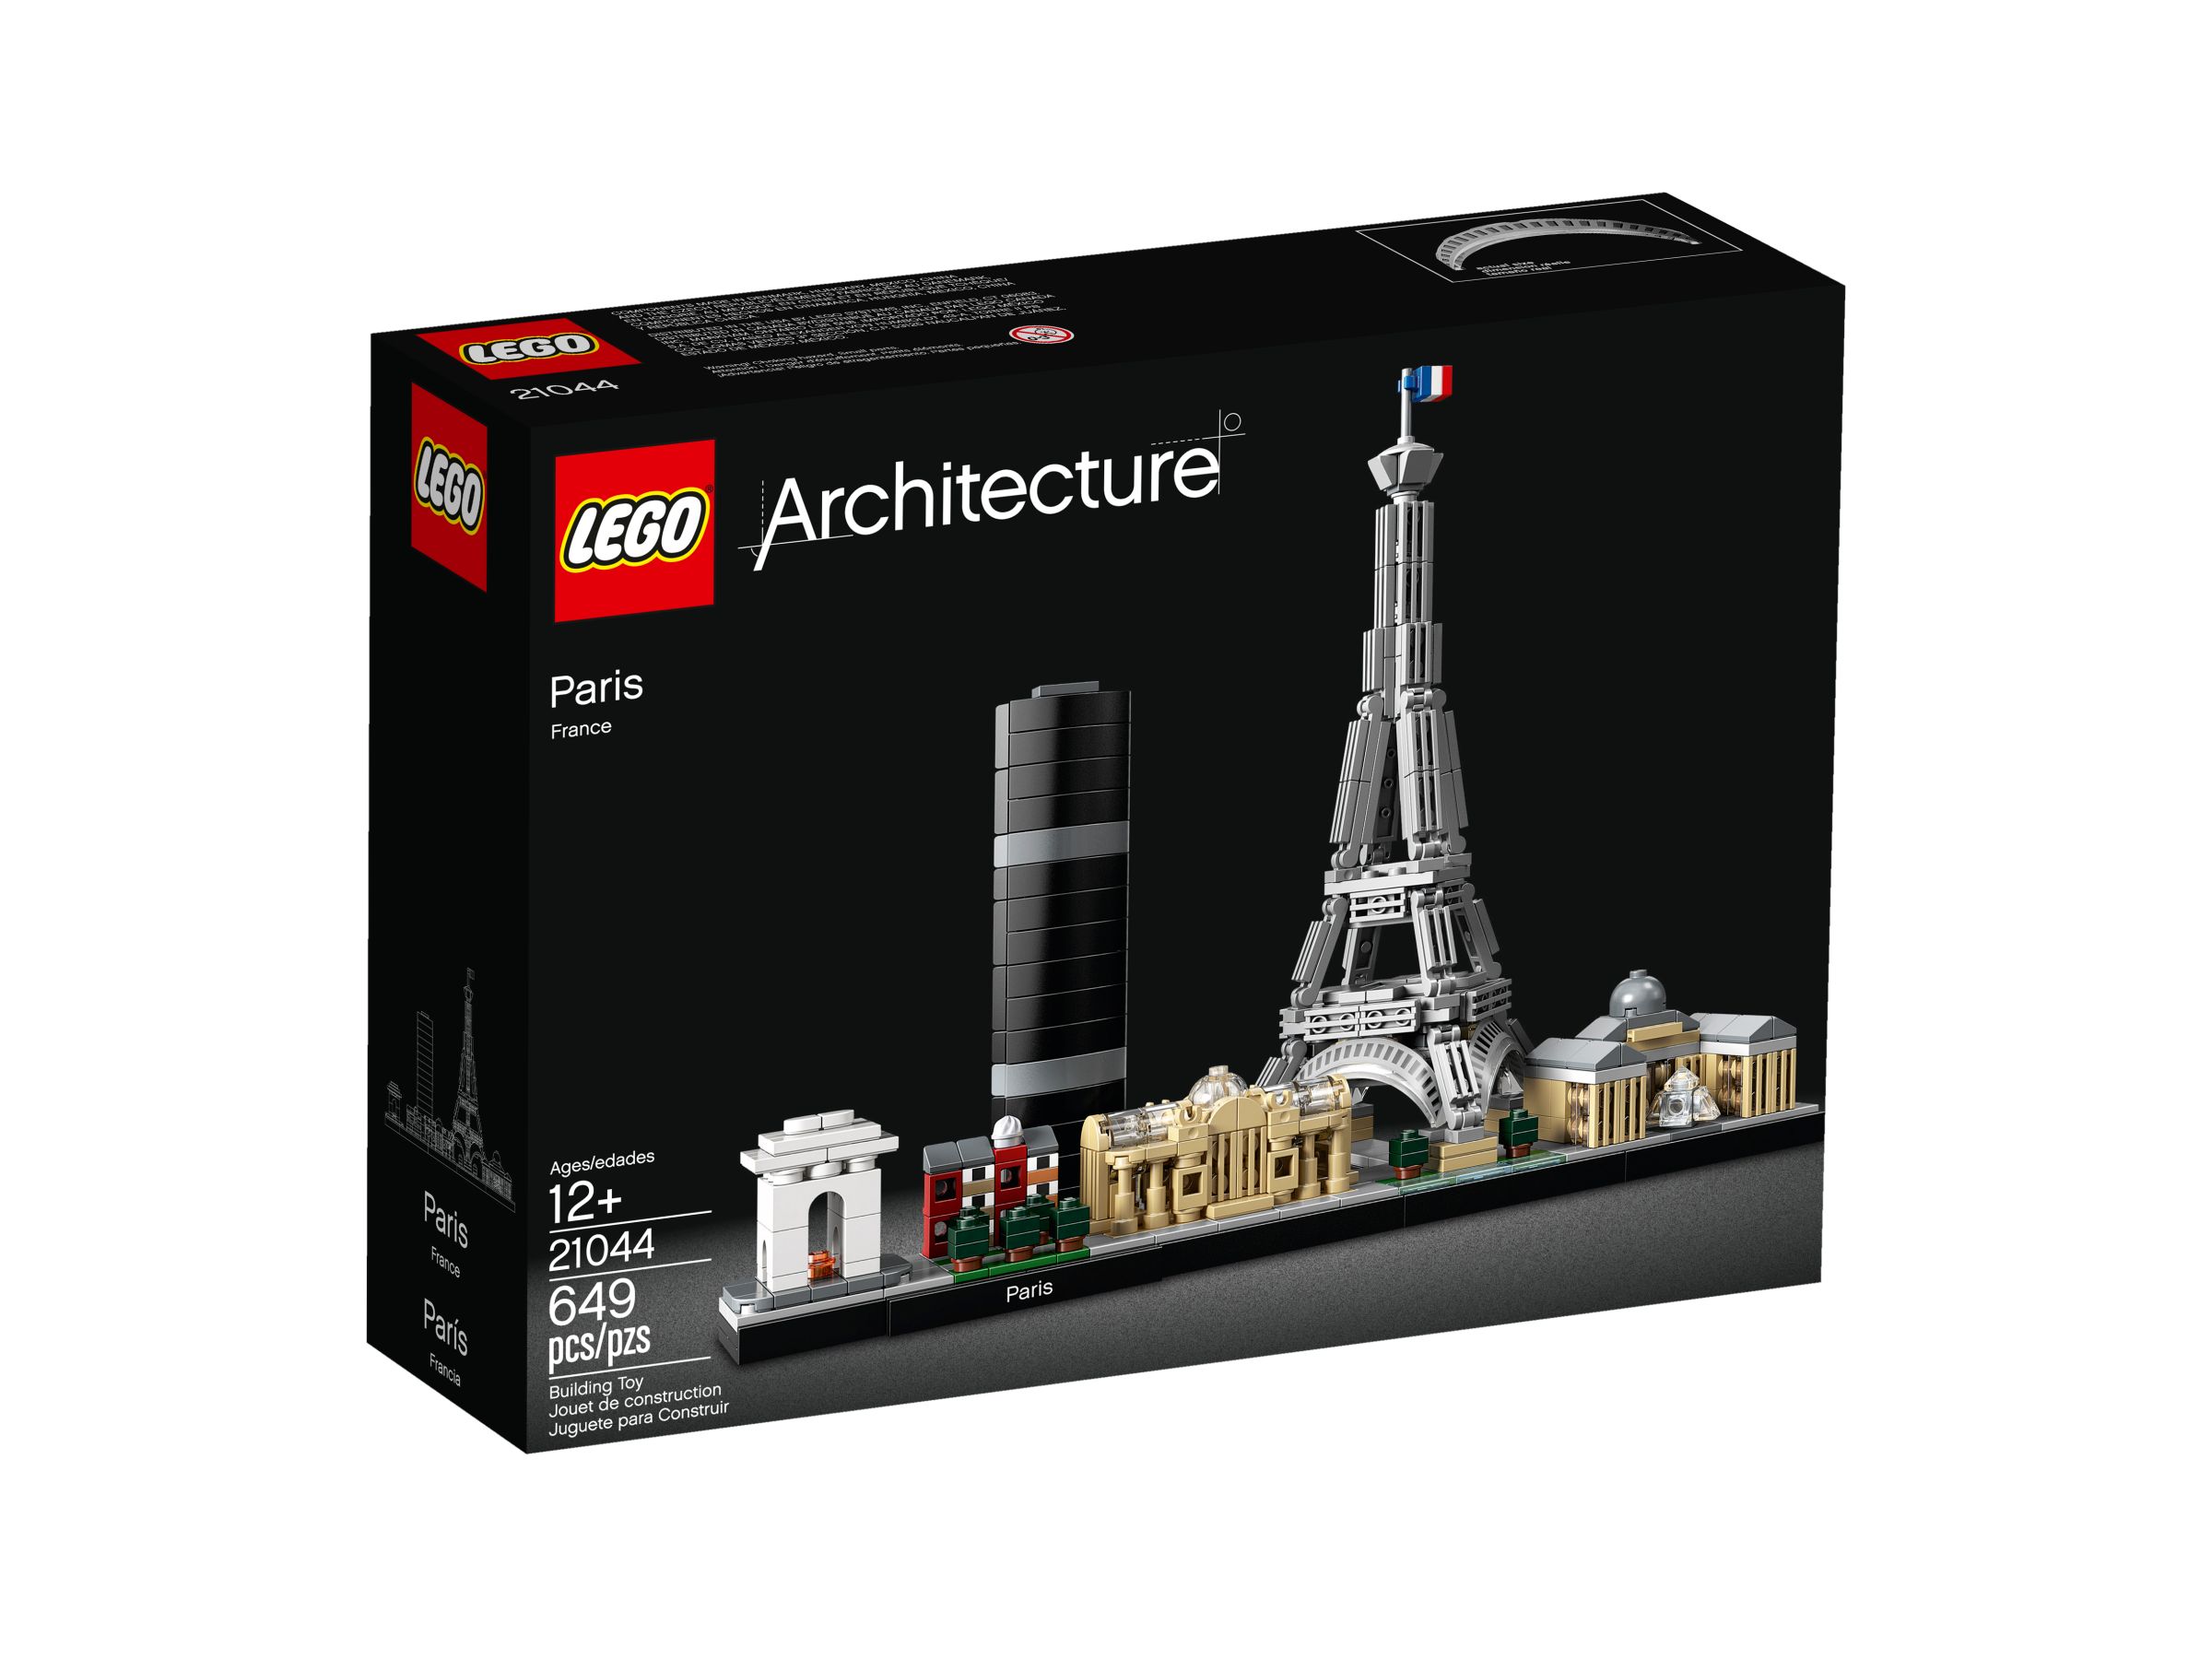 LEGO Architecture 21044 Paris LEGO_21044_alt1.jpg